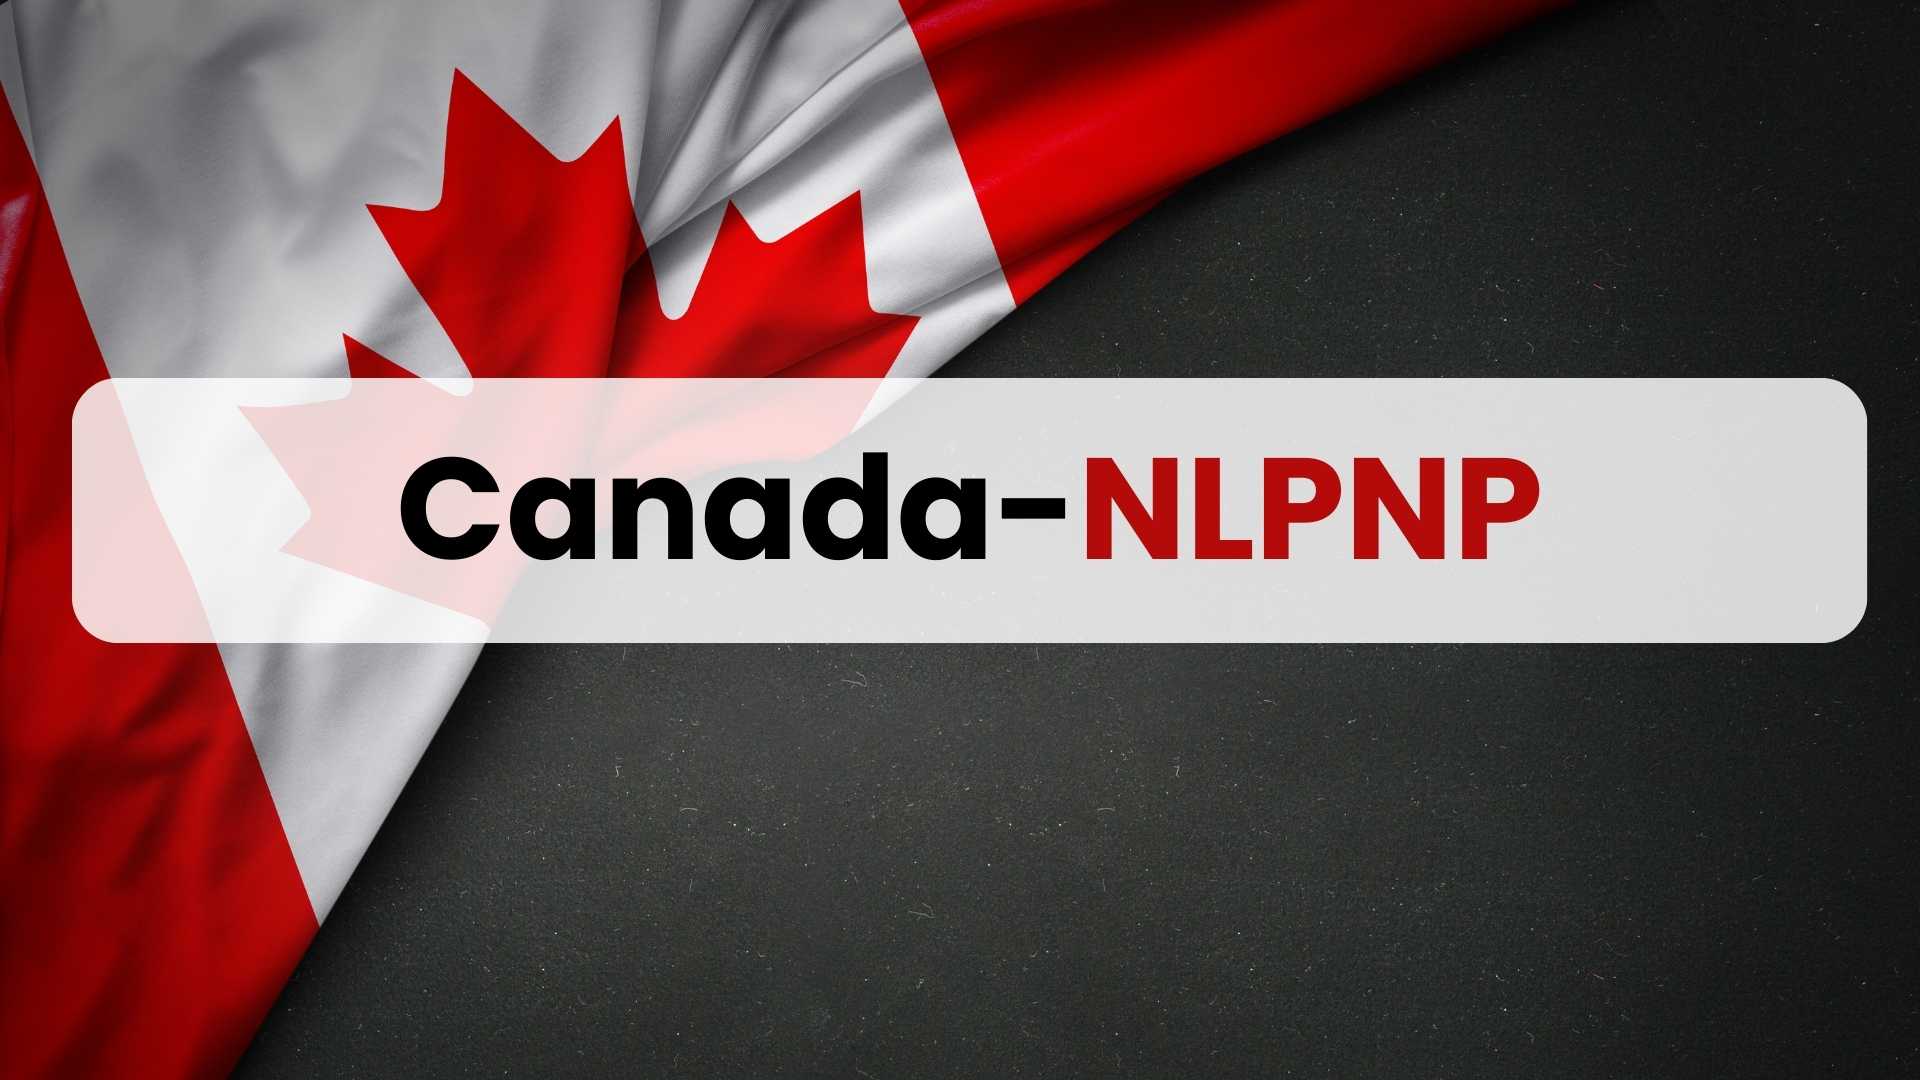 Canada-NLPNP (Newfoundland and Labrador Provincial Nominee Program)